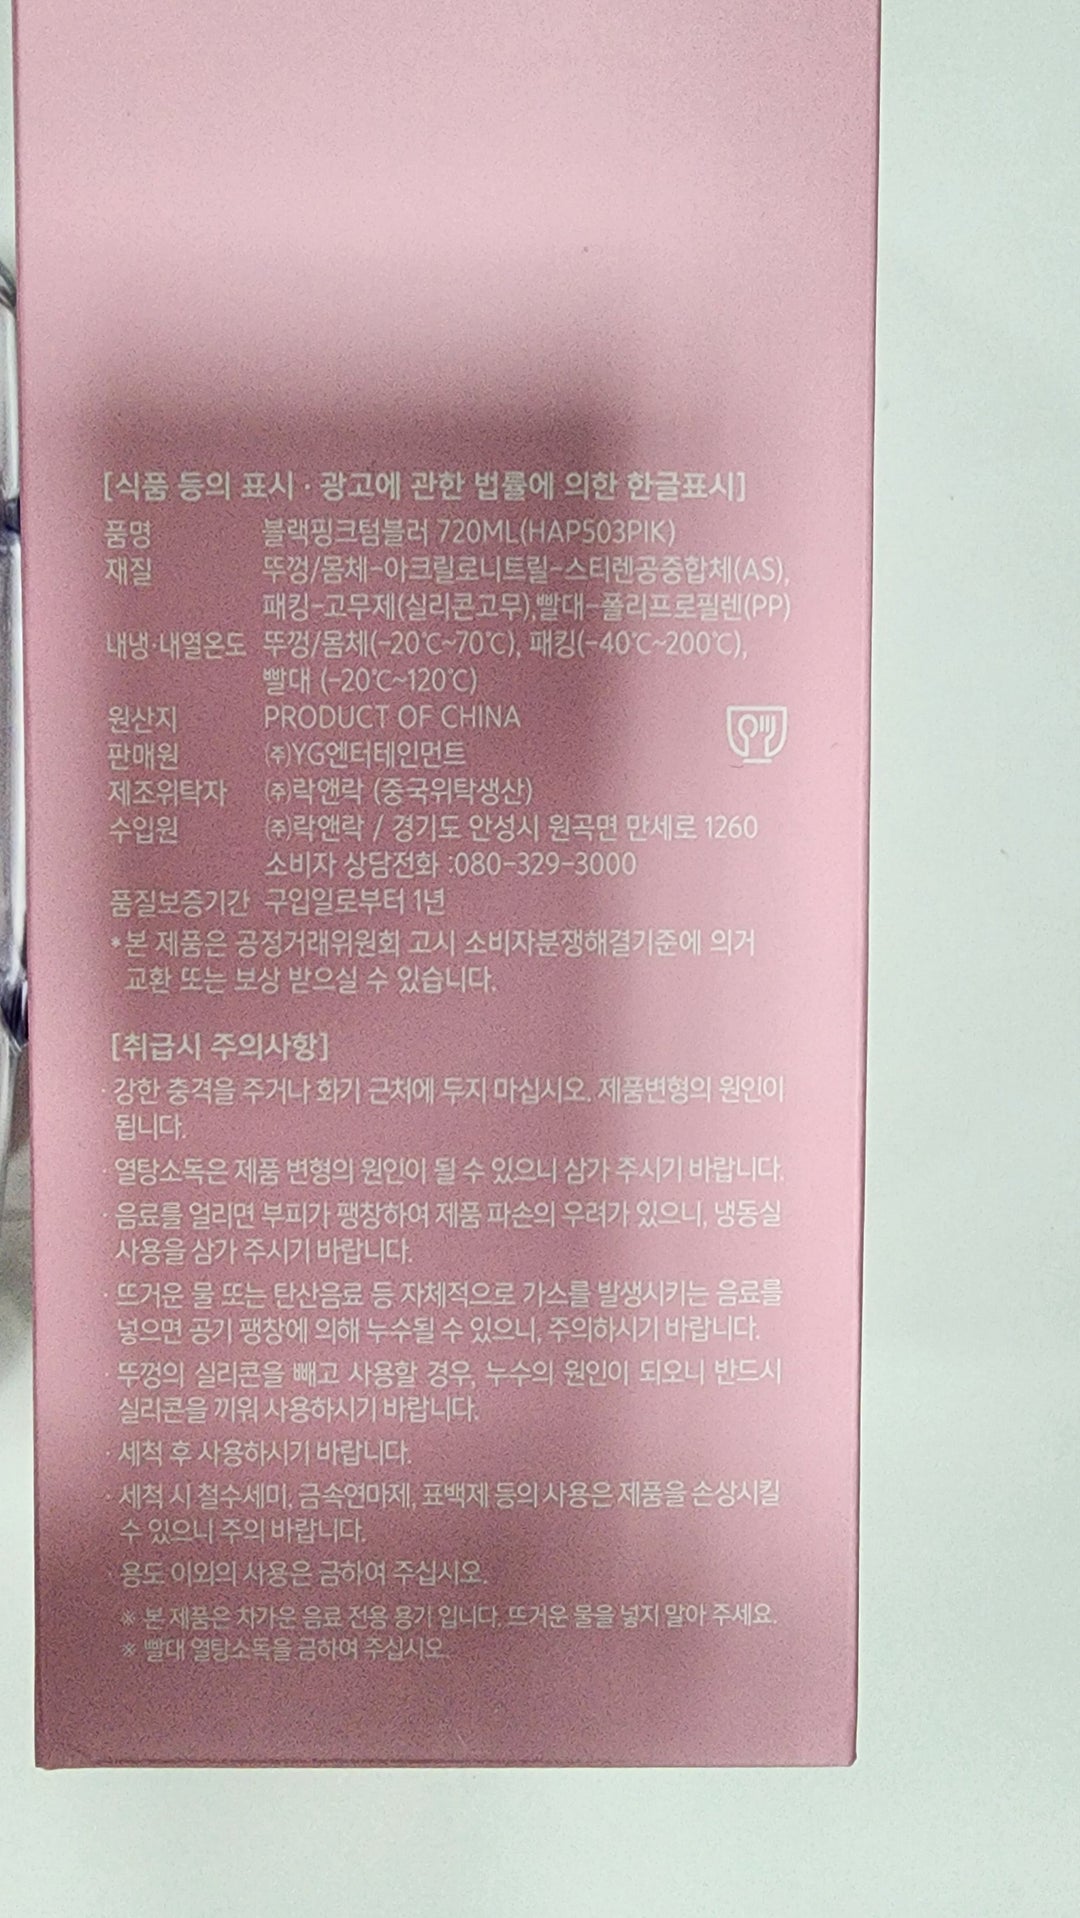 블랙핑크 "블링크 프리미엄 멤버십 키트" - 공식 MD [11/14 업데이트]